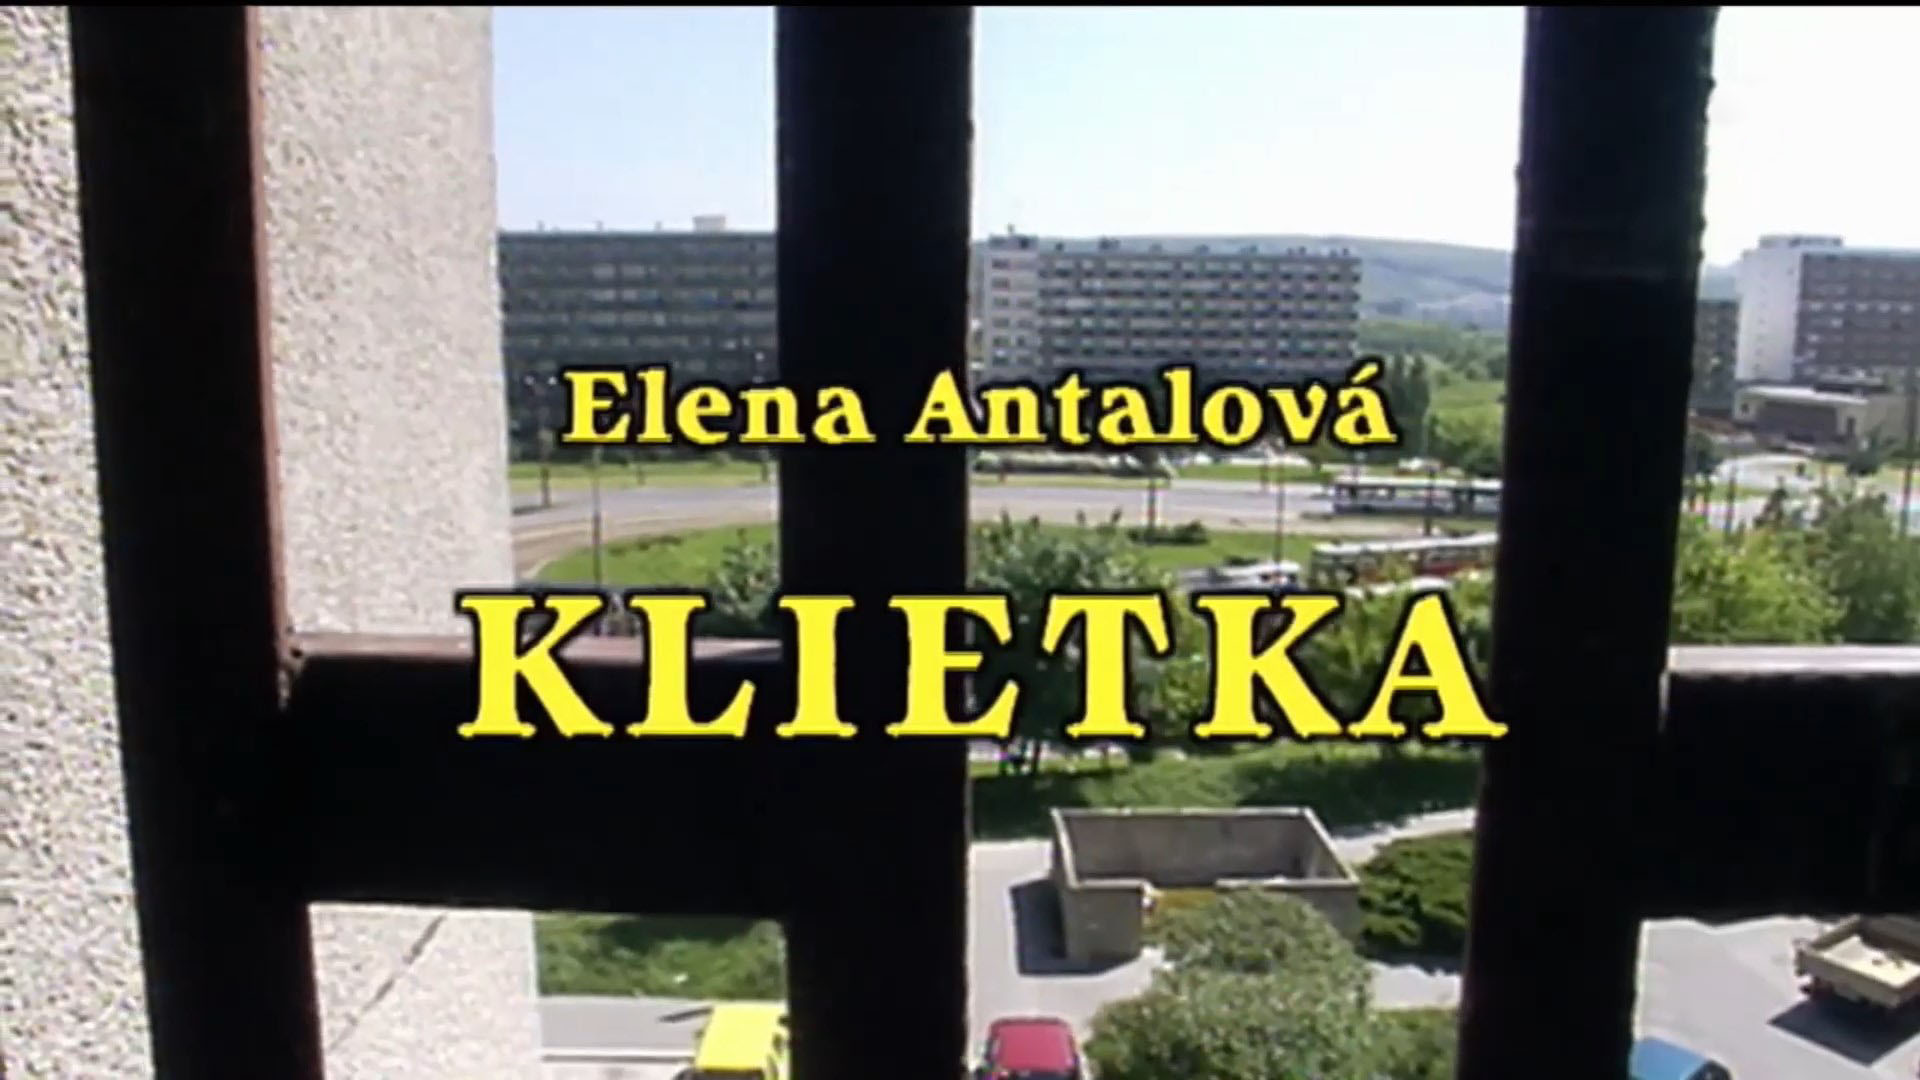 Stiahni si Filmy CZ/SK dabing Klietka (1999)(SK)[TvRip] = CSFD 65%